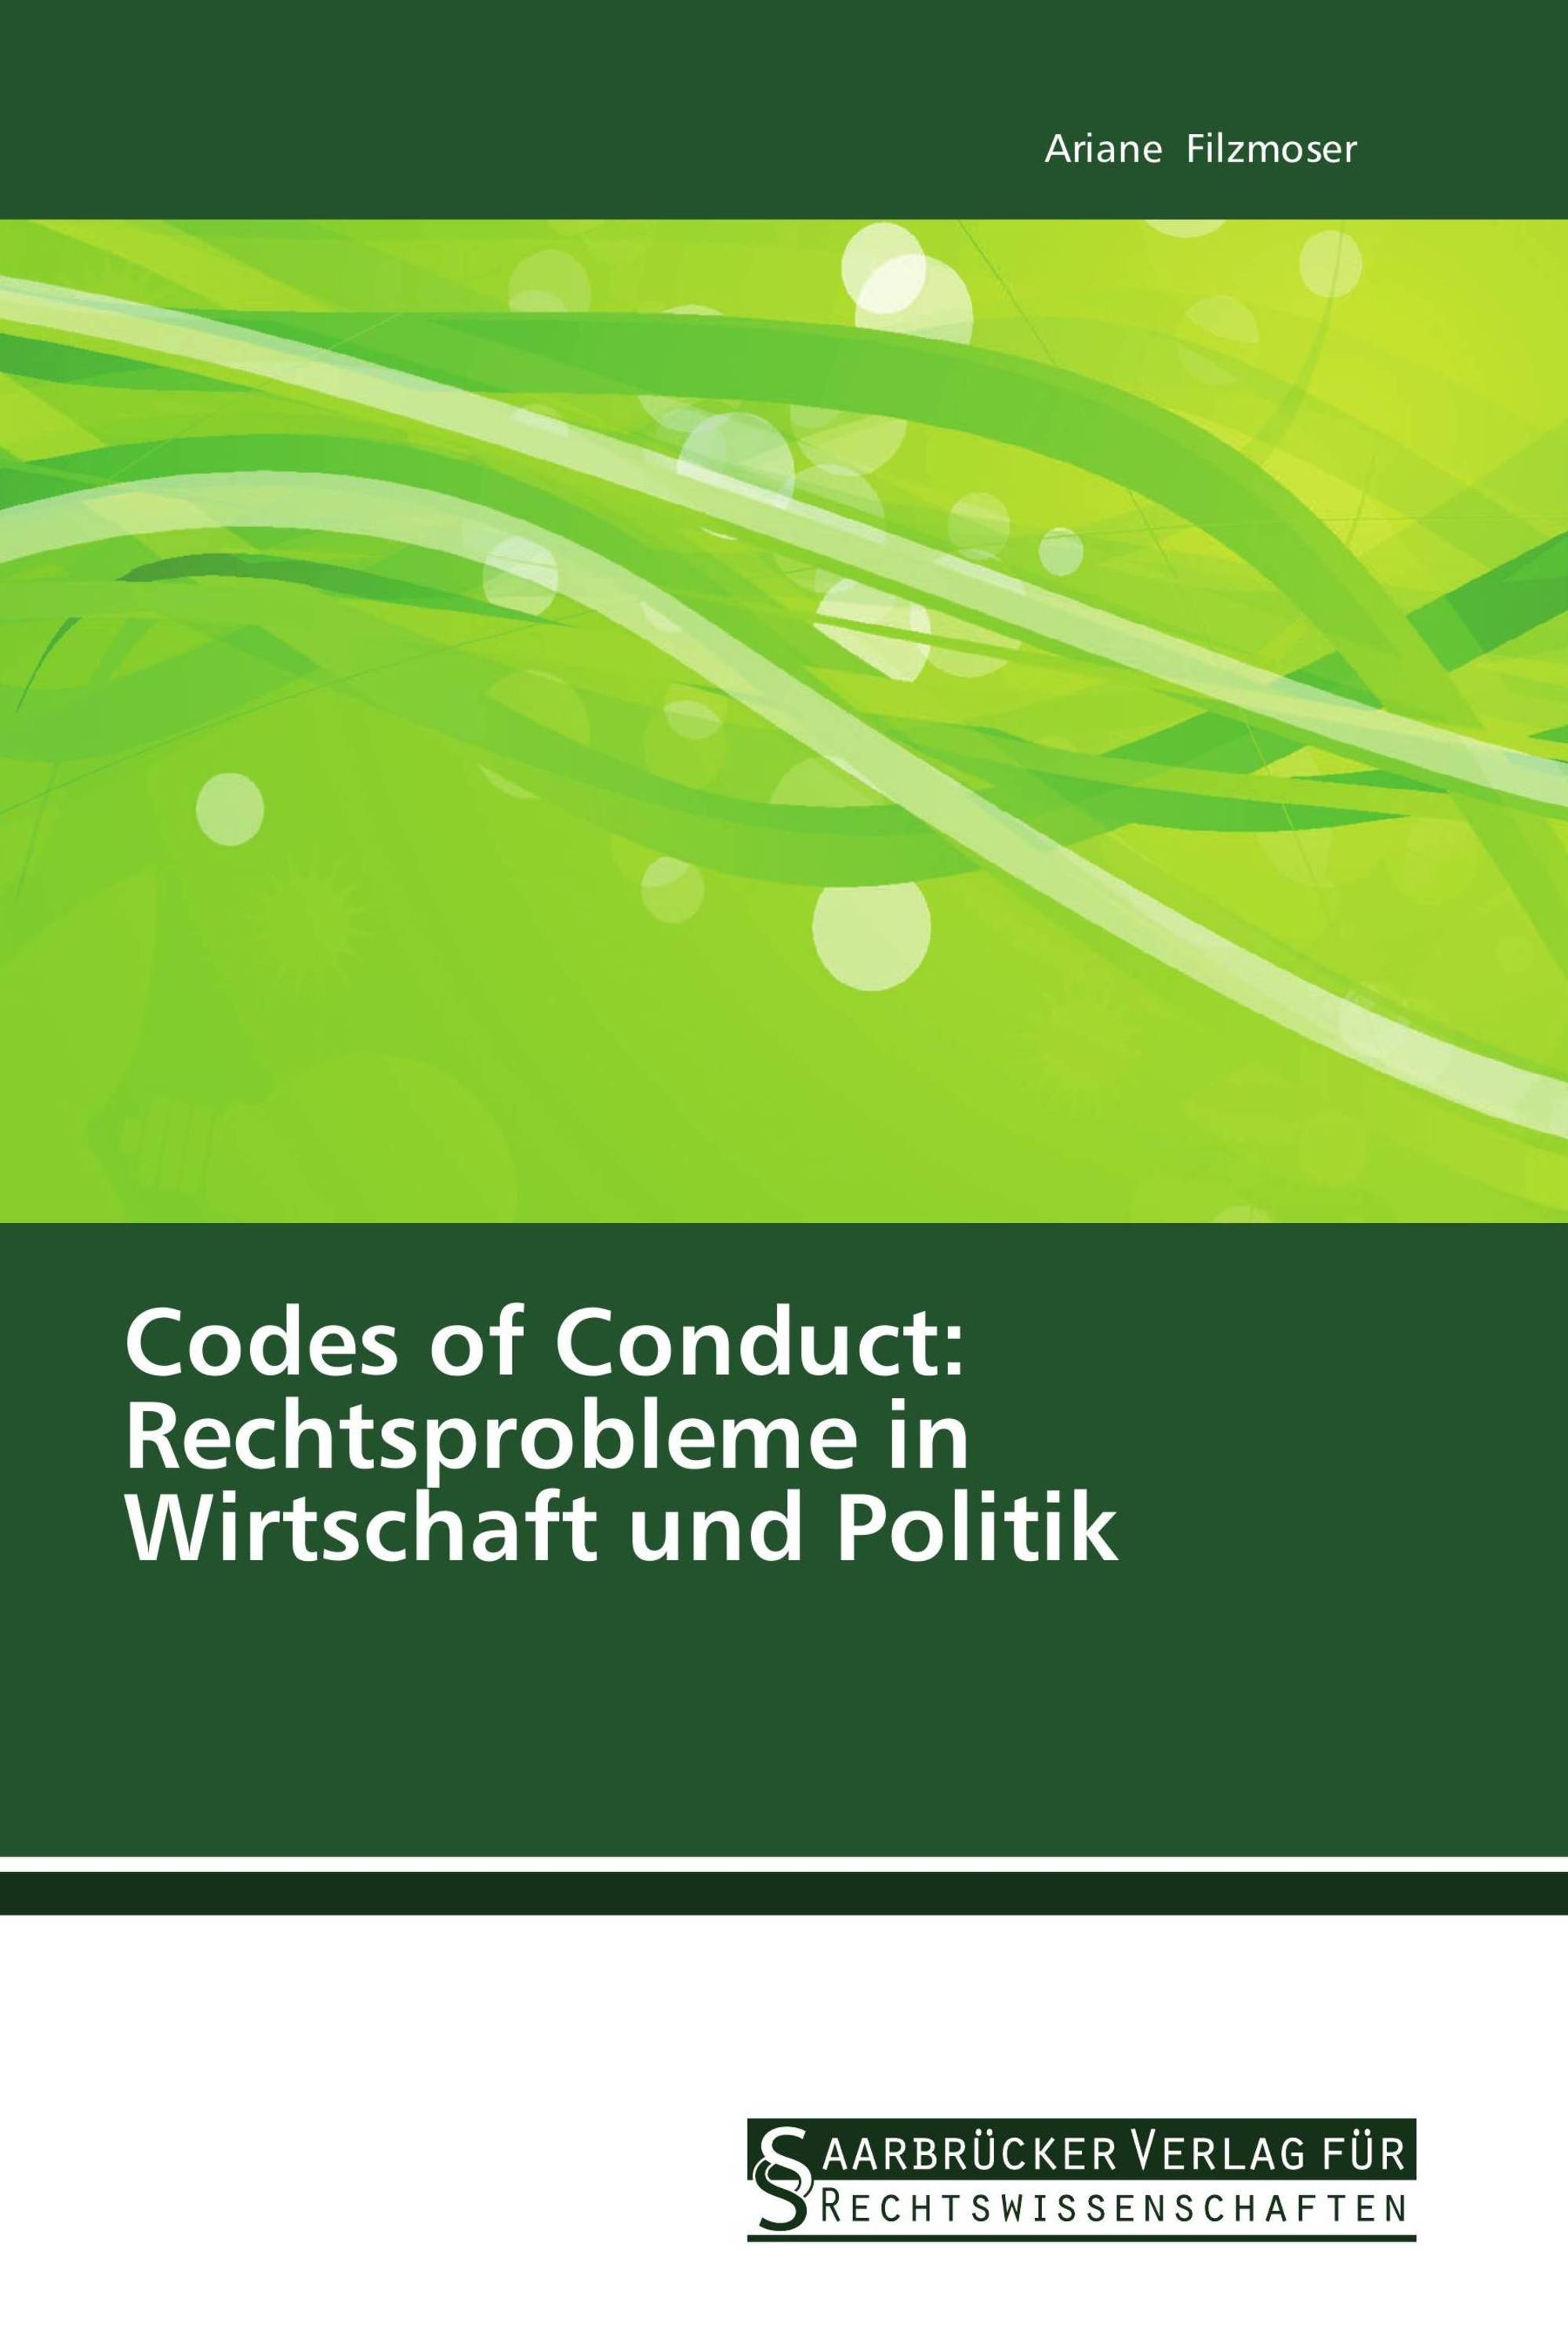 Codes of Conduct: Rechtsprobleme in Wirtschaft und Politik